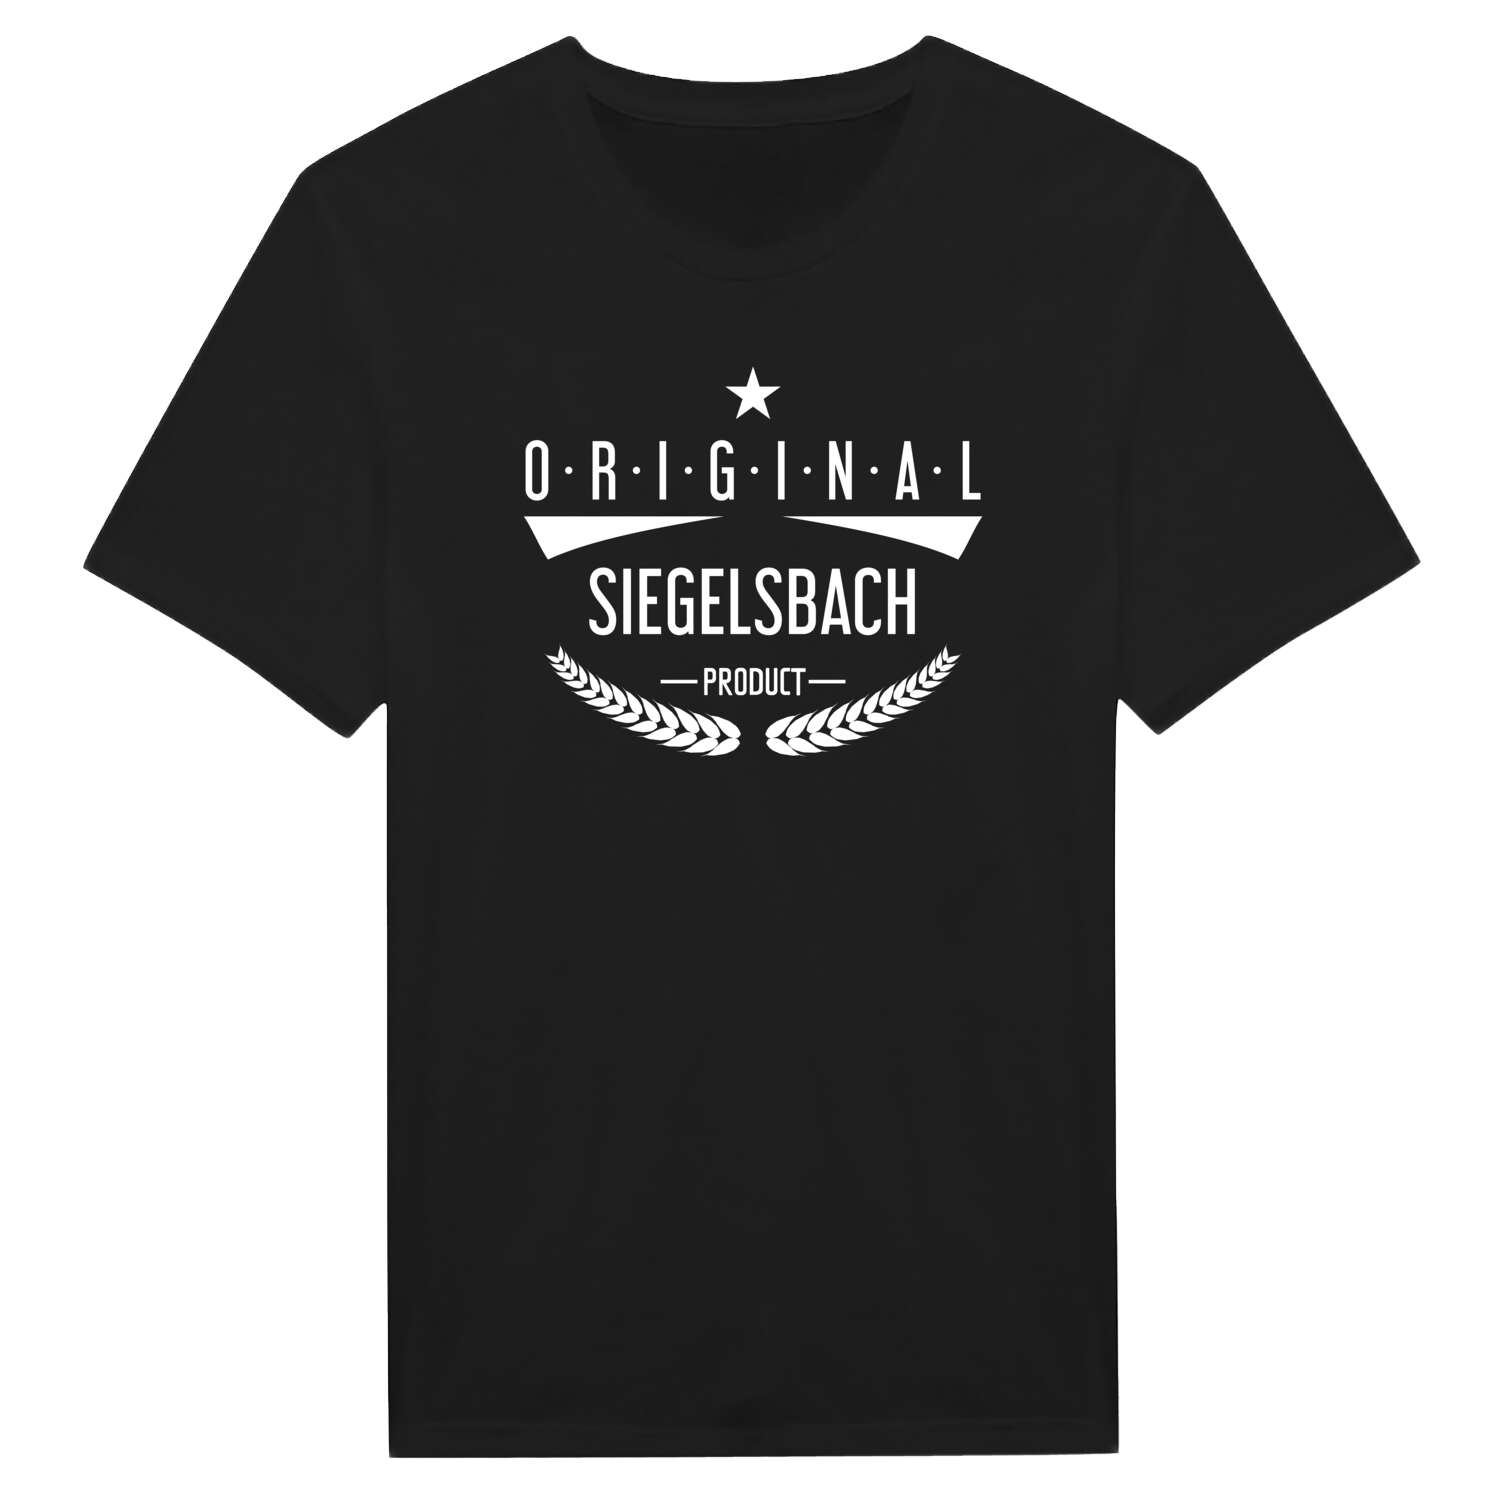 Siegelsbach T-Shirt »Original Product«